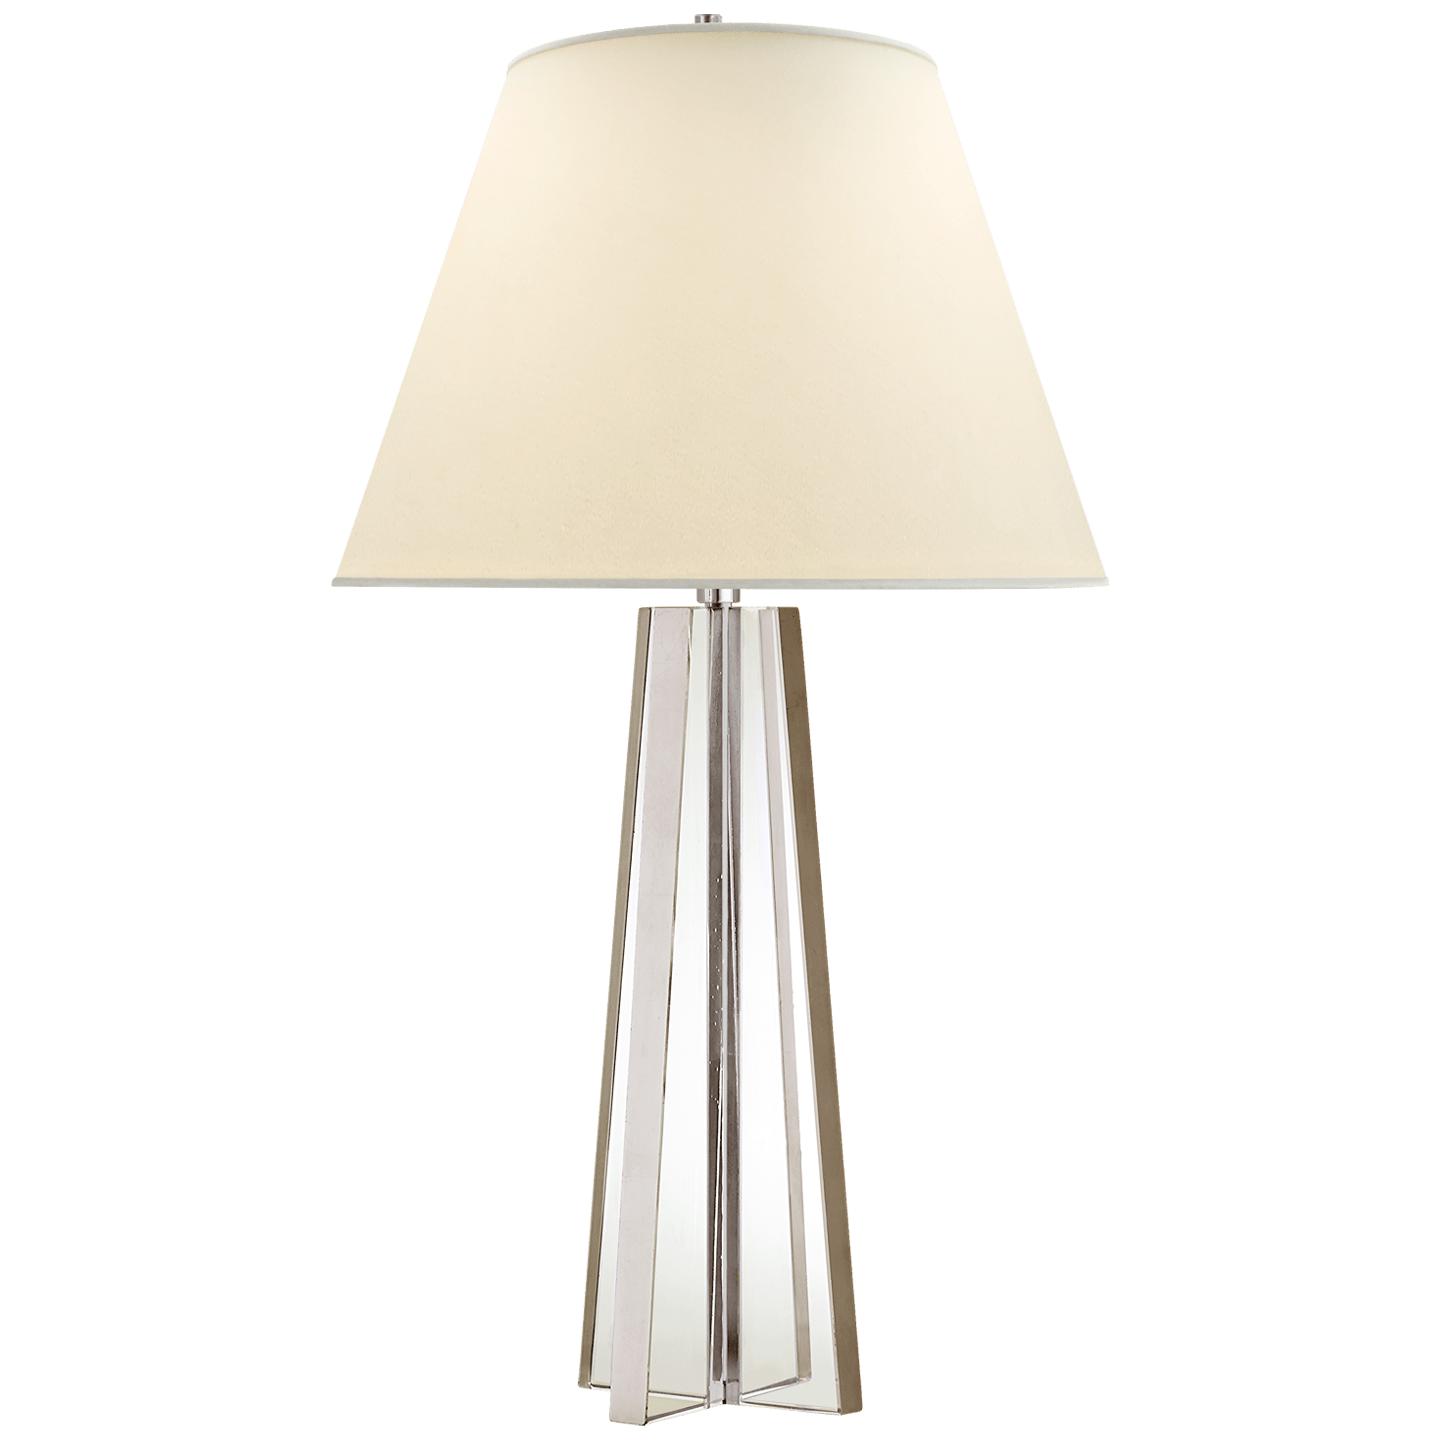 Купить Настольная лампа Lila Table Lamp в интернет-магазине roooms.ru